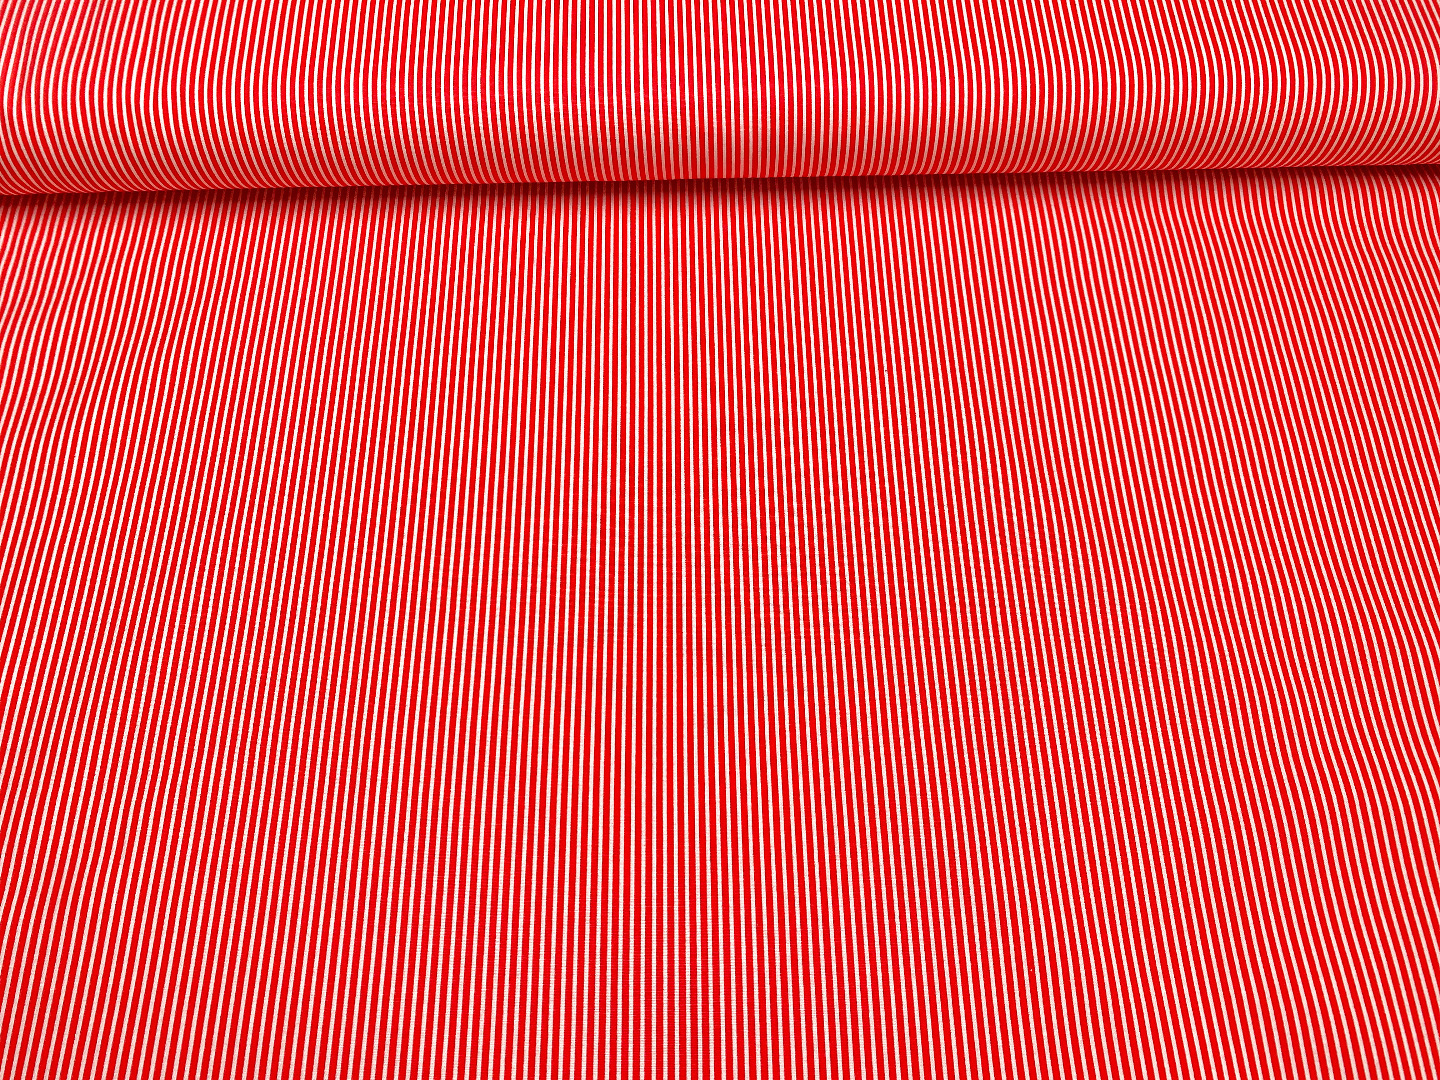 Stoff Streifen - rot/weiß - 100 Baumwolle - Patchwork 3